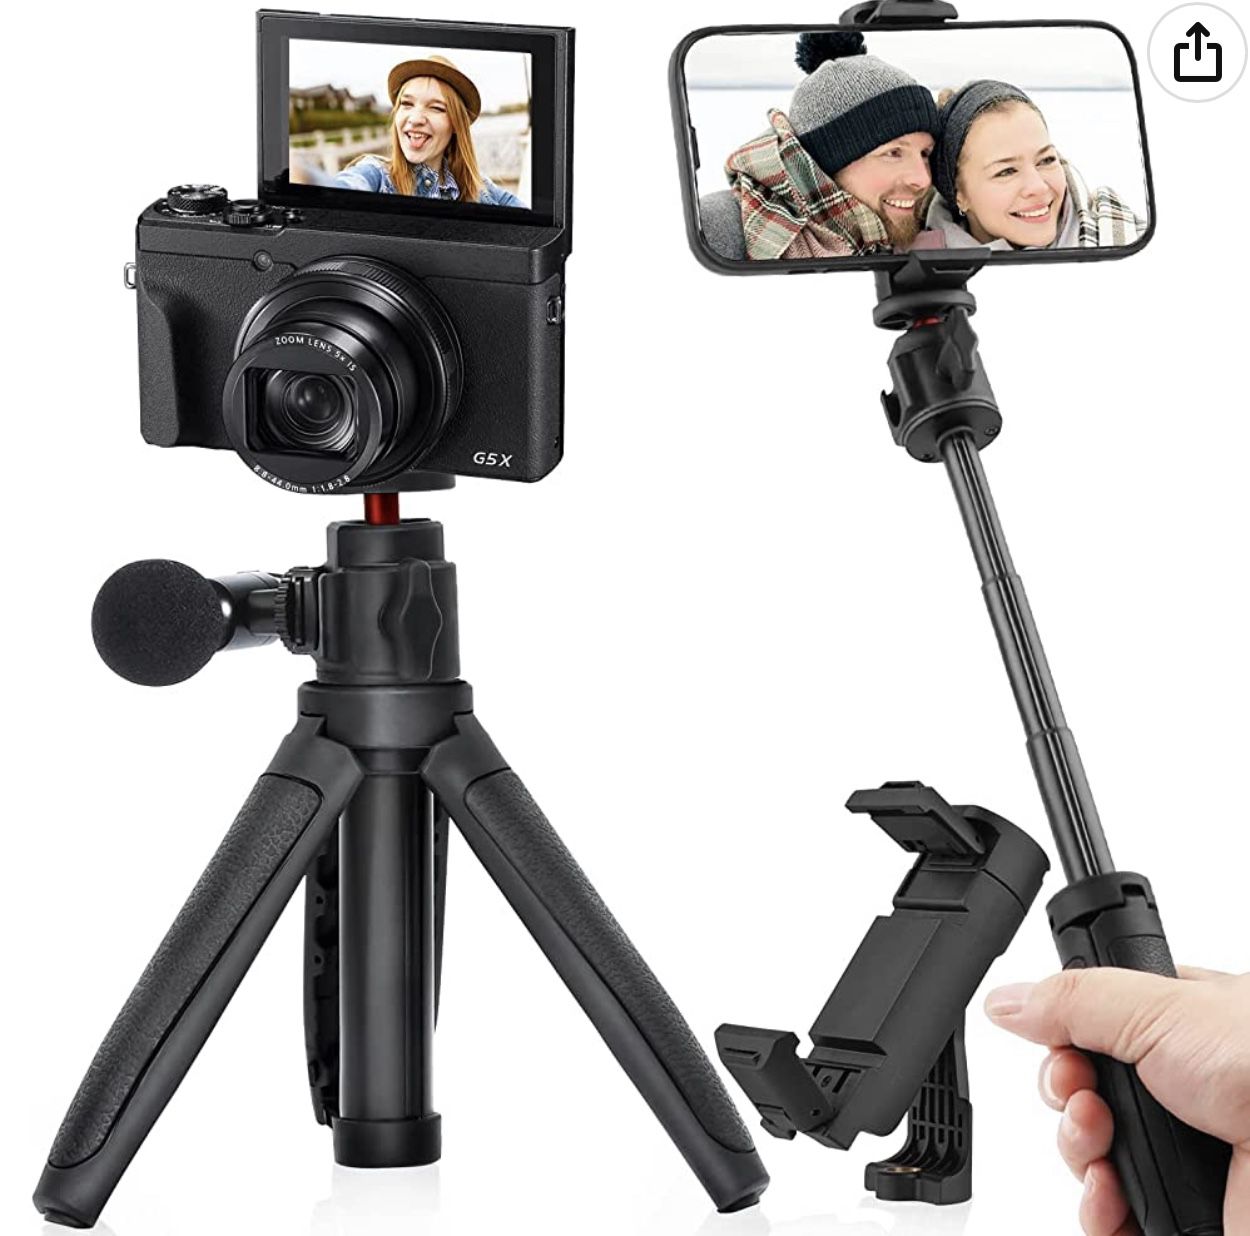 MiniShot Pro Camera Tripod